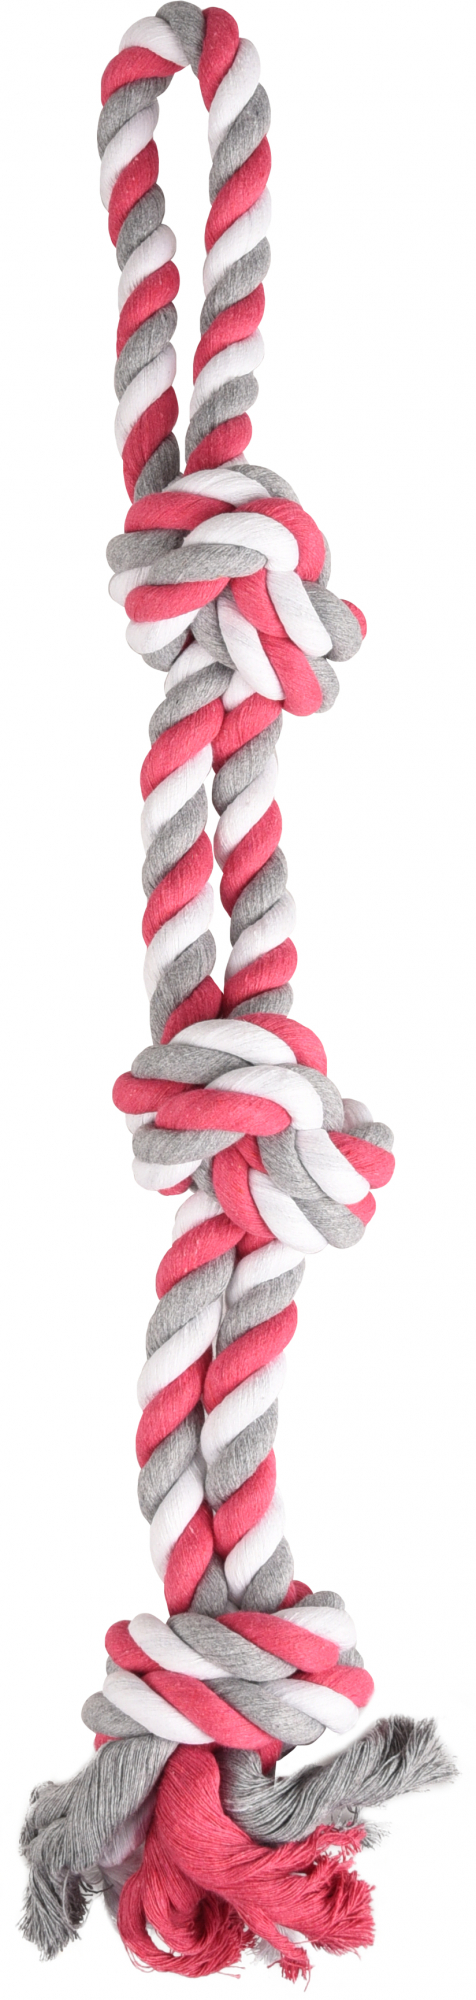 JIM 3-Knoten-Seilspielzeug für Hunde – Fuchsia/Weiß